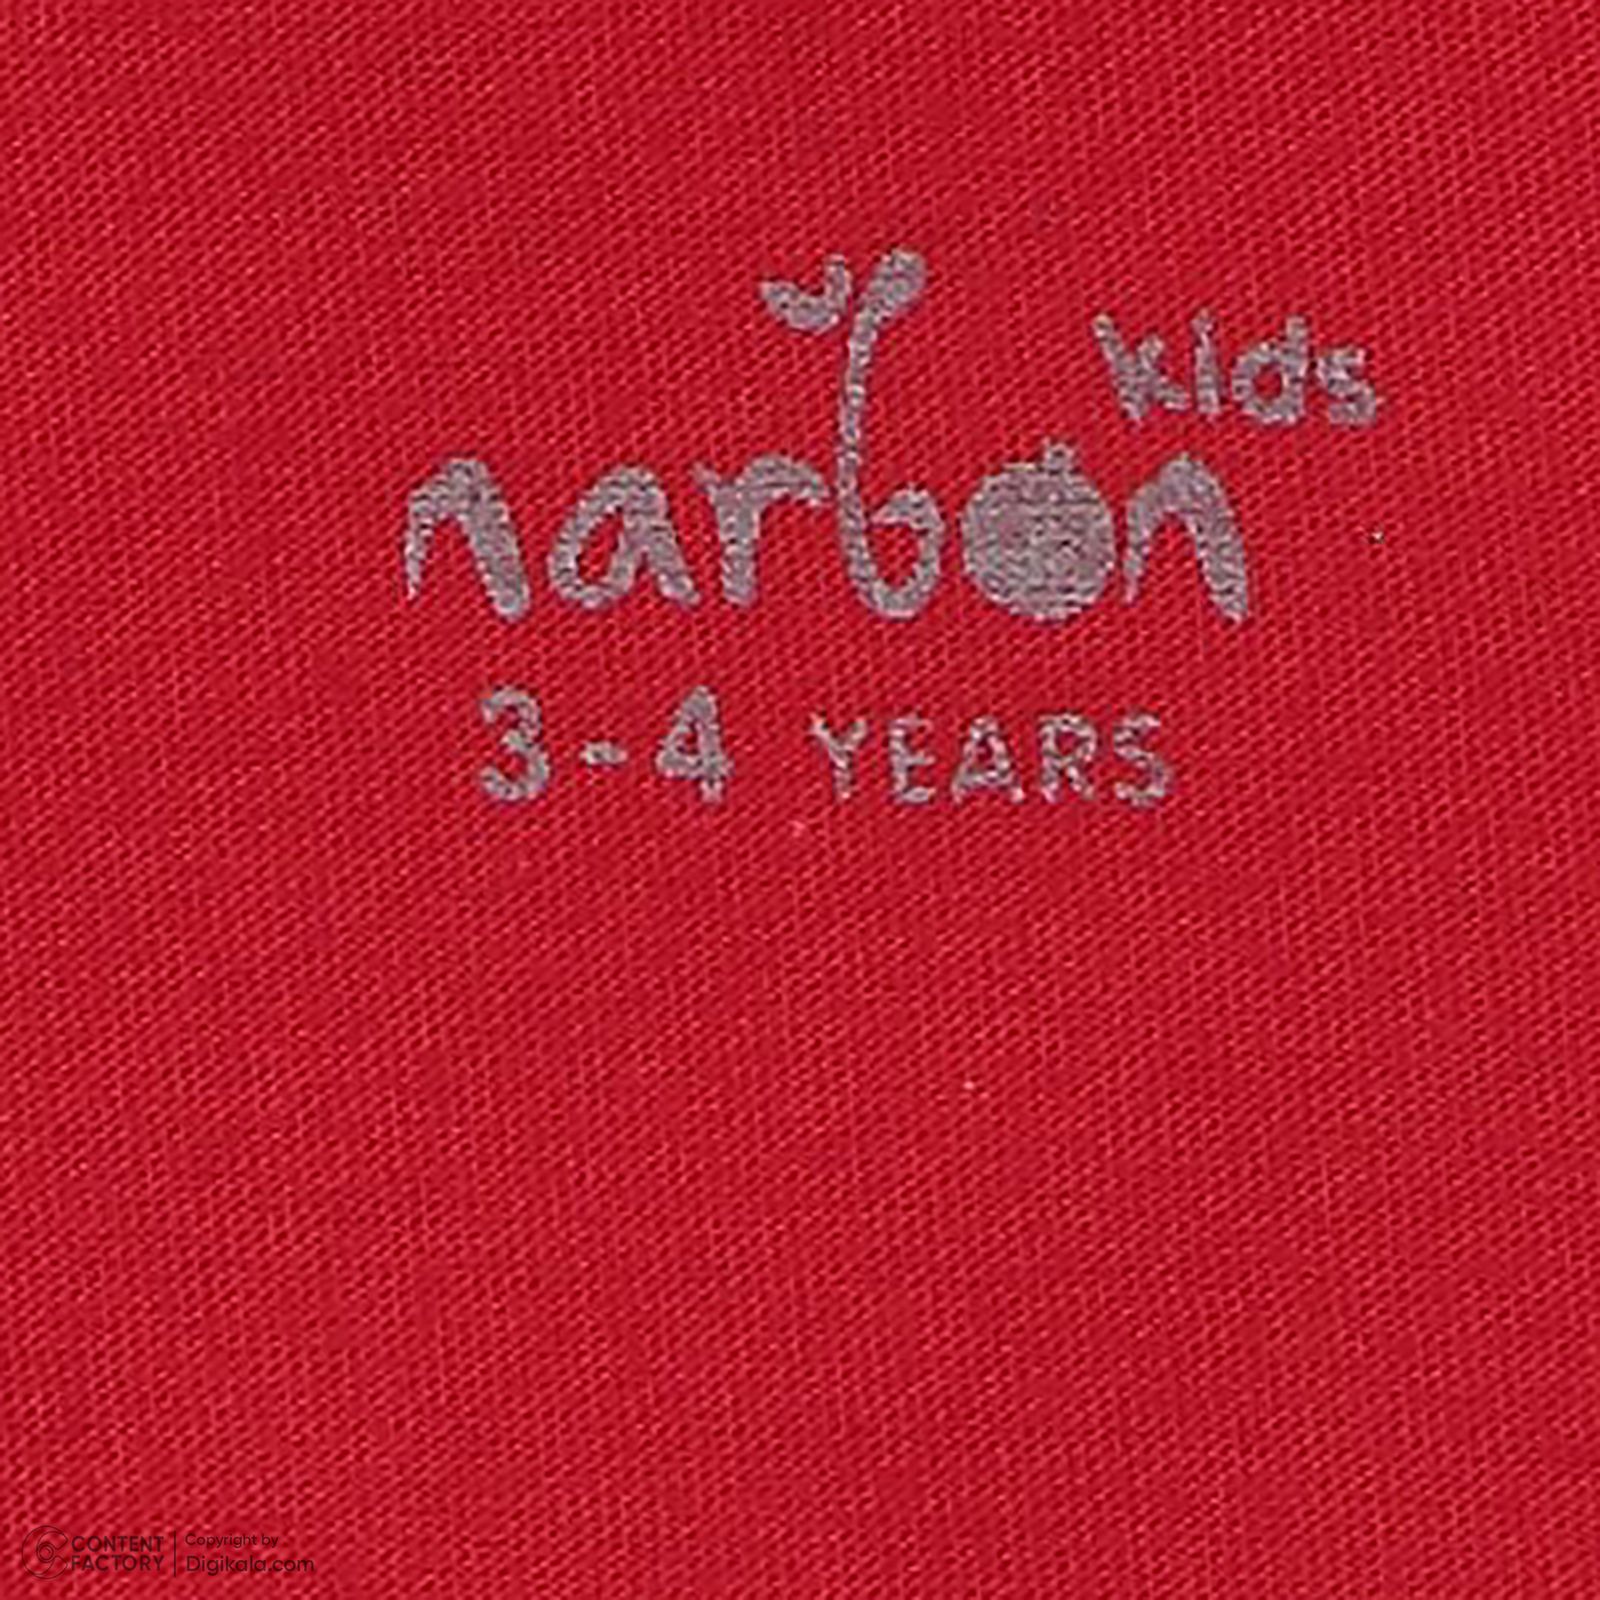 تی شرت آستین بلند بچگانه ناربن مدل 492 رنگ قرمز -  - 5